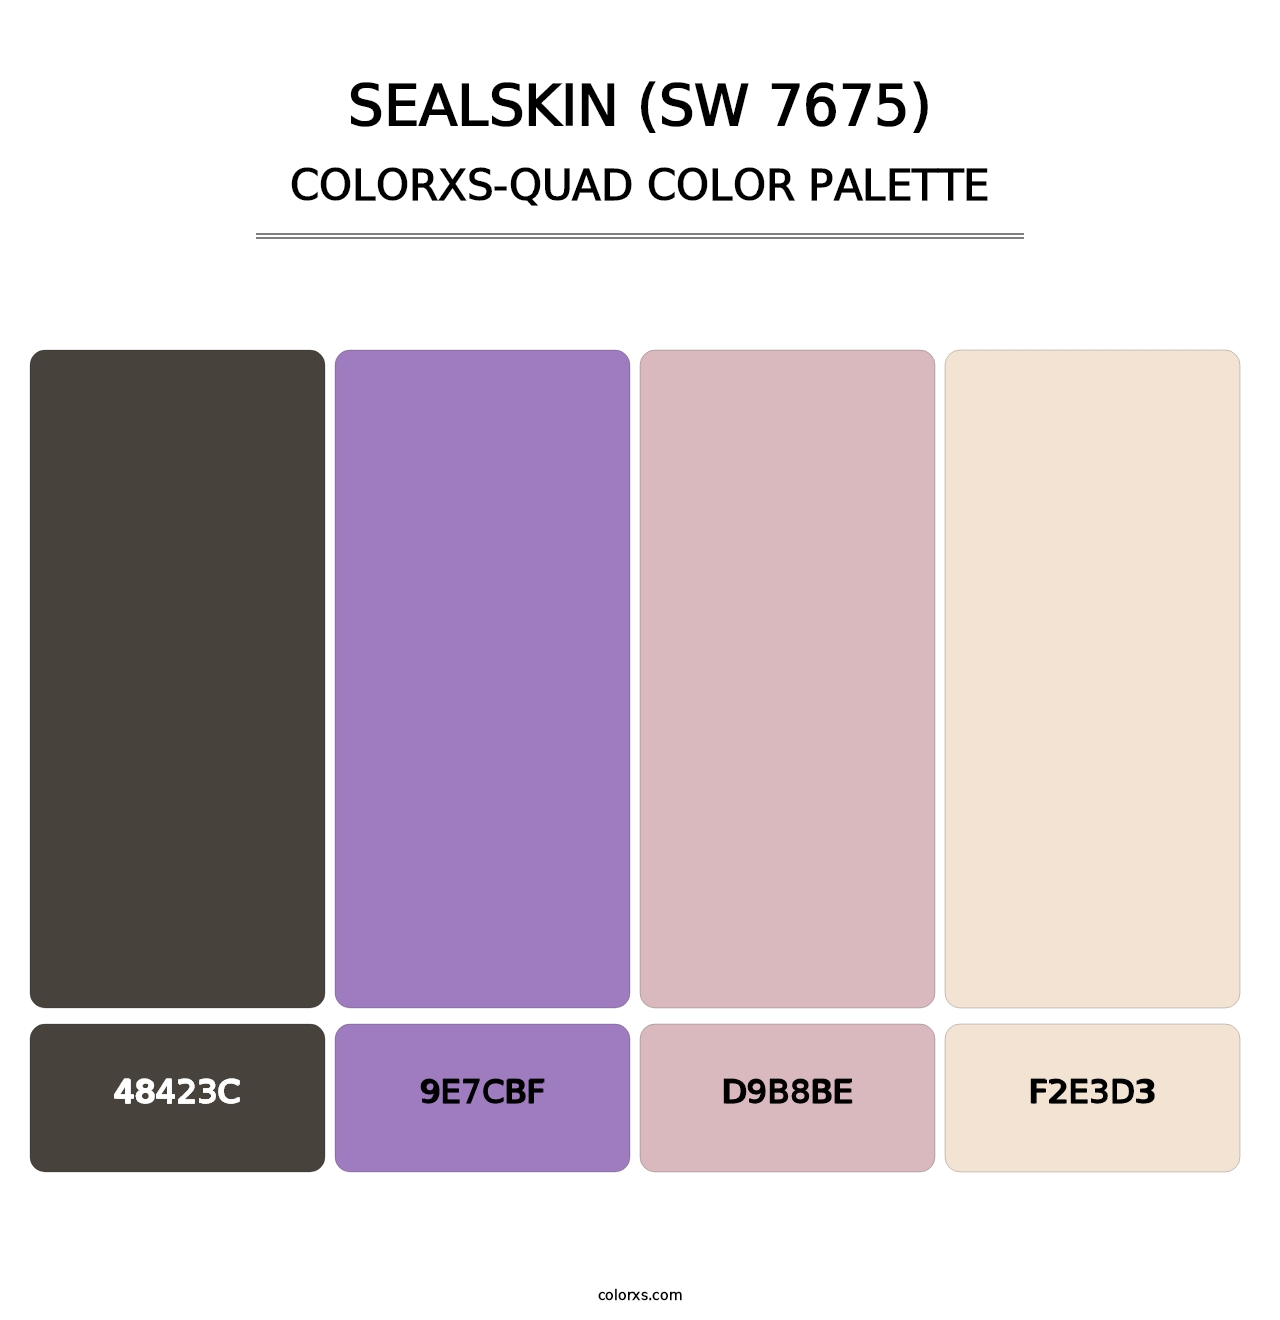 Sealskin (SW 7675) - Colorxs Quad Palette